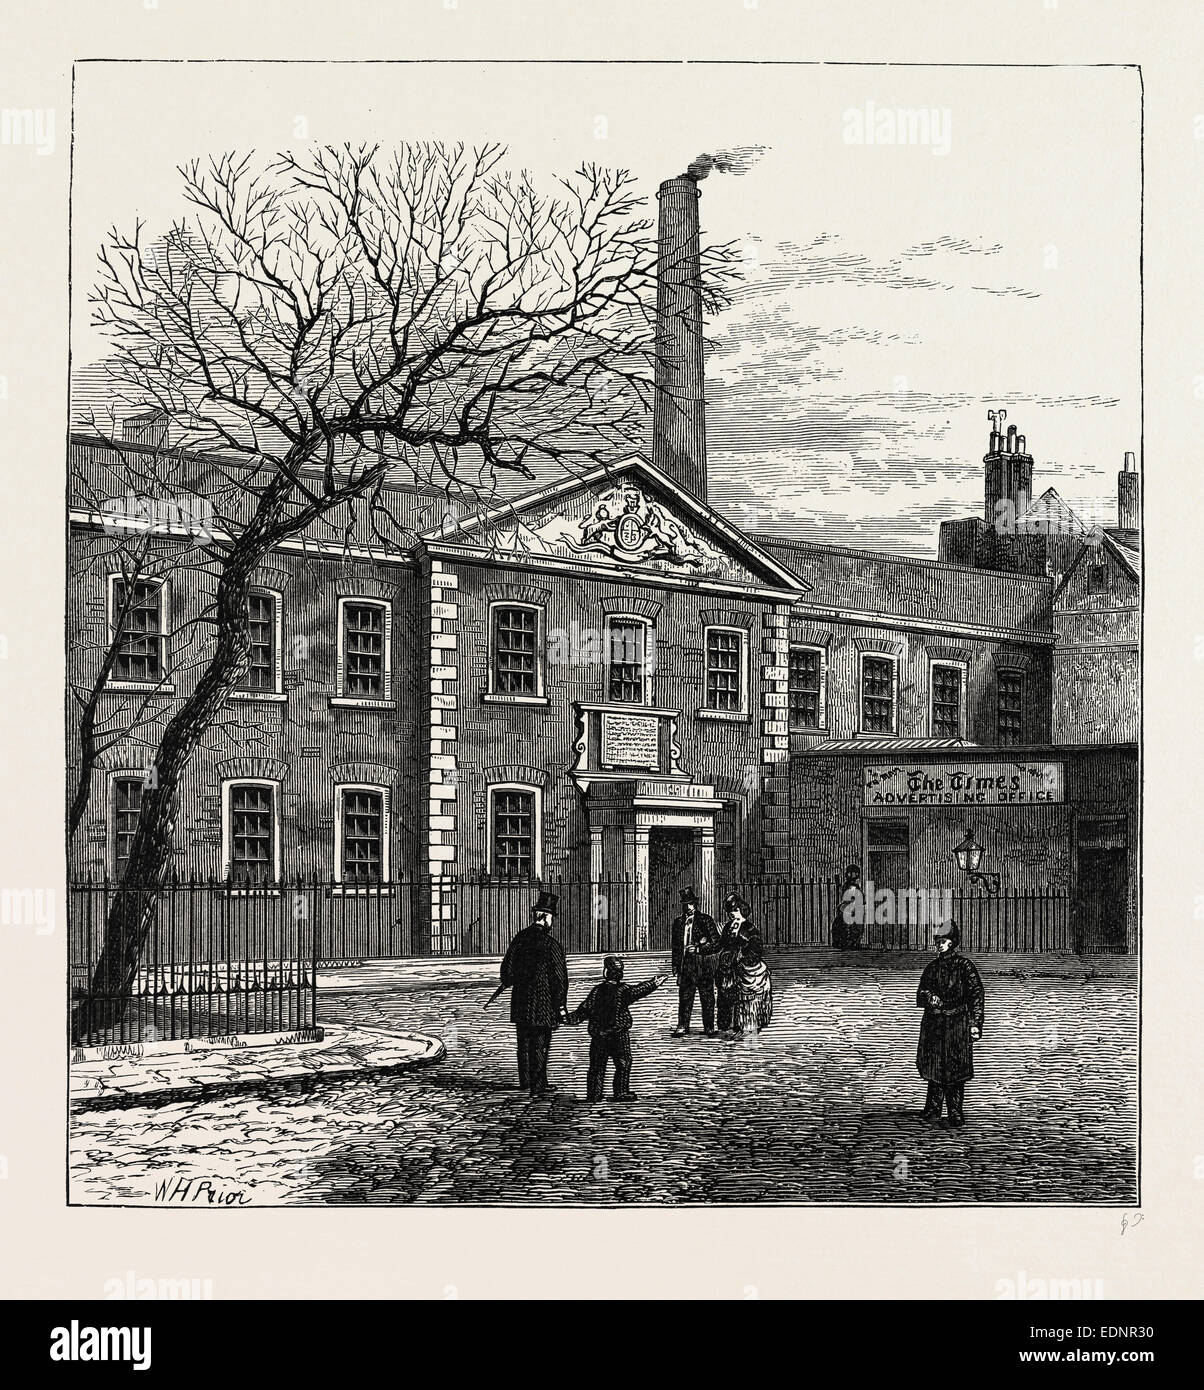 PRINTING HOUSE SQUARE ET LE 'Times' OFFICE, 1870. Londres, Royaume-Uni, la gravure du xixe siècle Banque D'Images